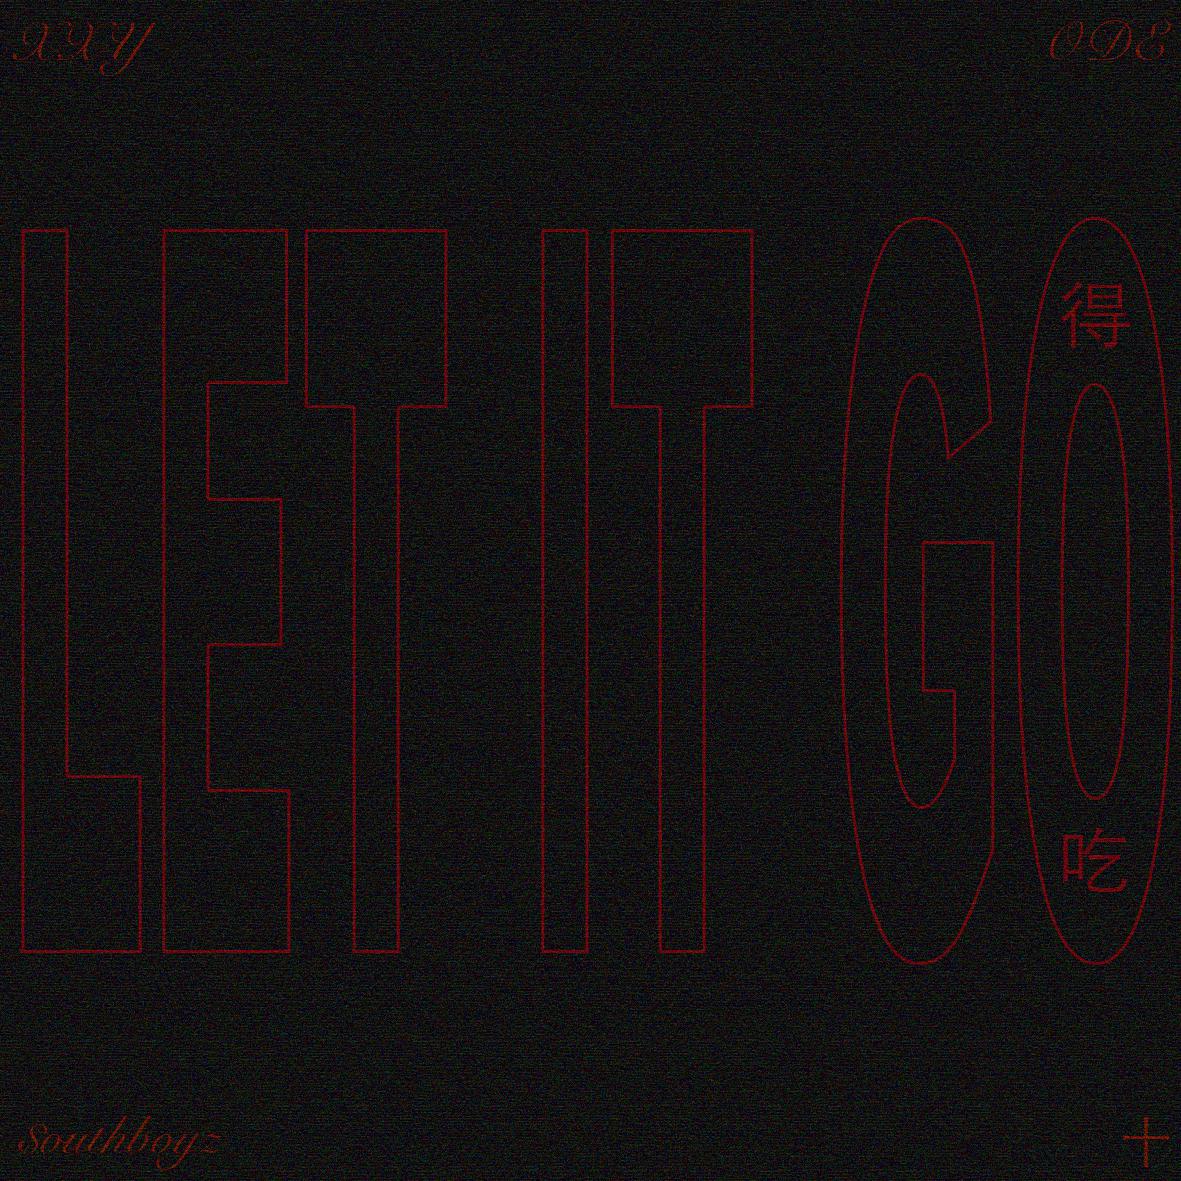 XXY - 得吃(Let it go)